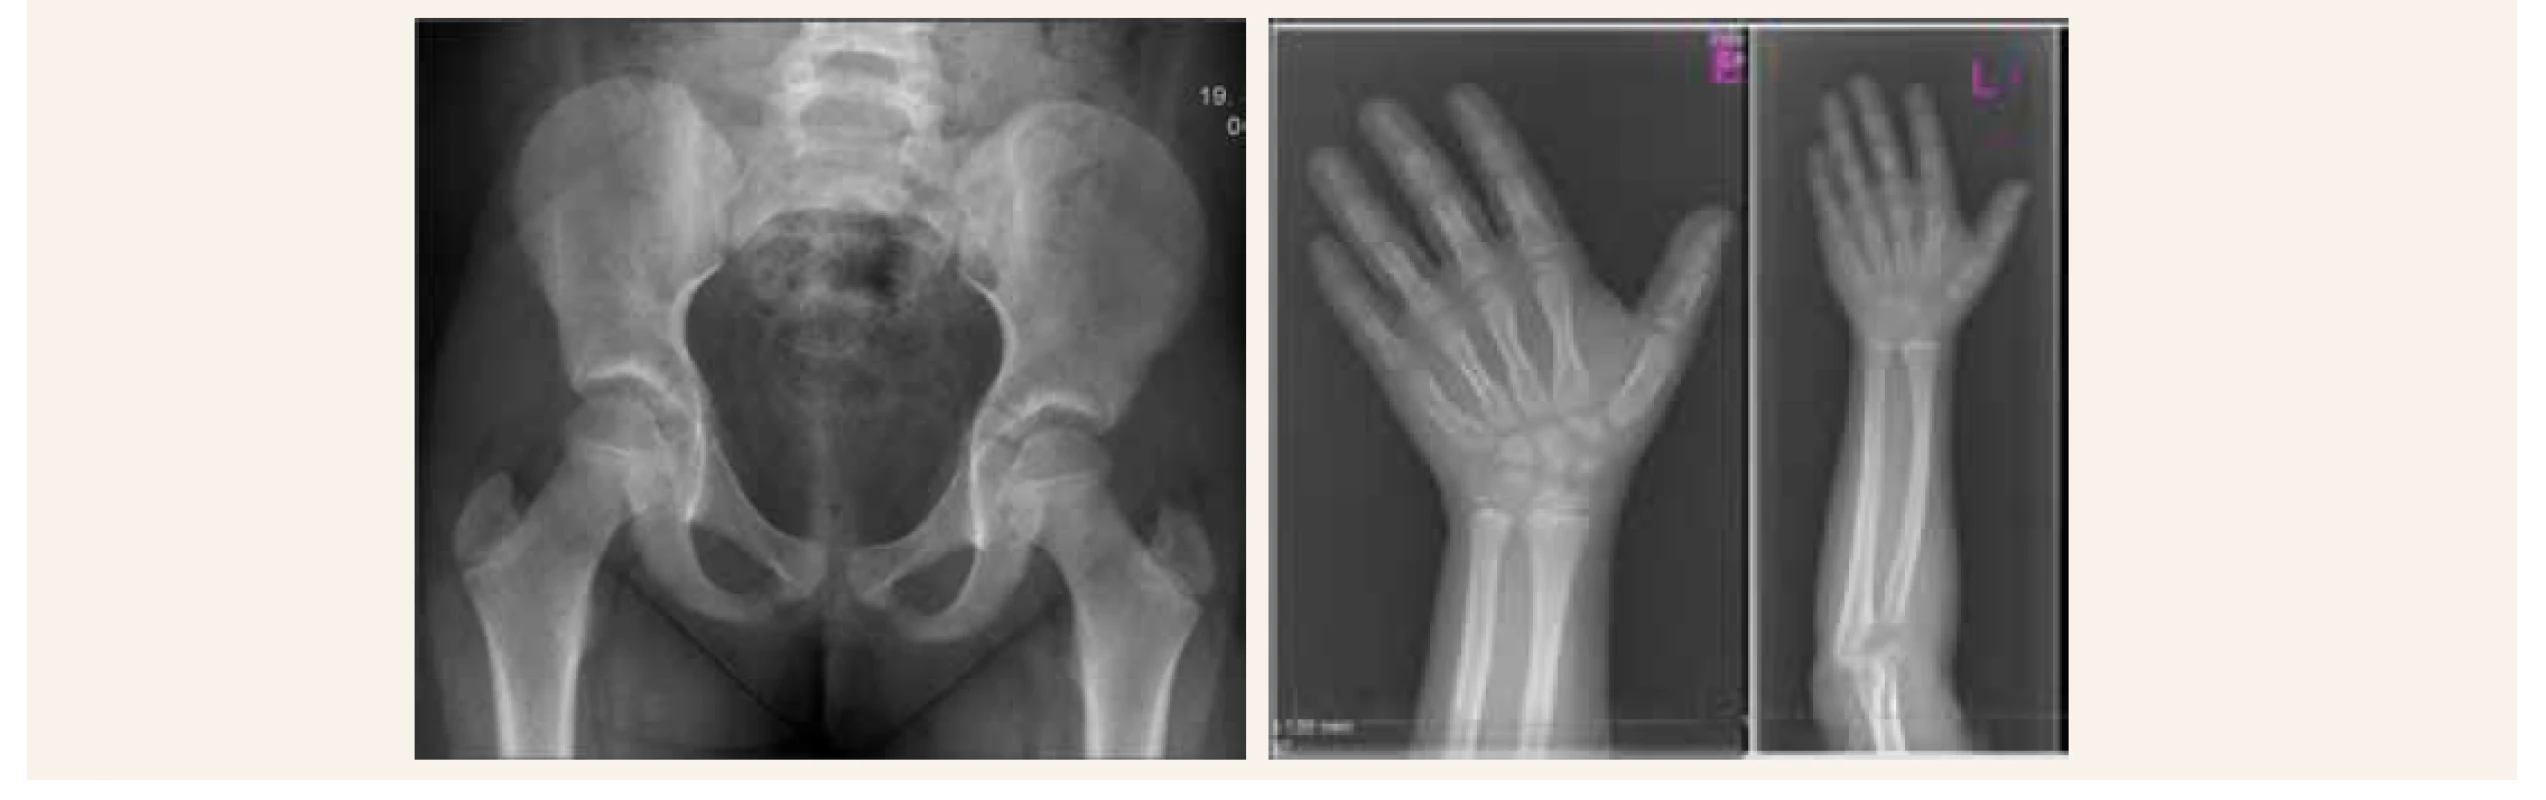 Skeletálny rádiograf naznačujúci zobákovité epifýzy rádia a širšie zápästné kostičky